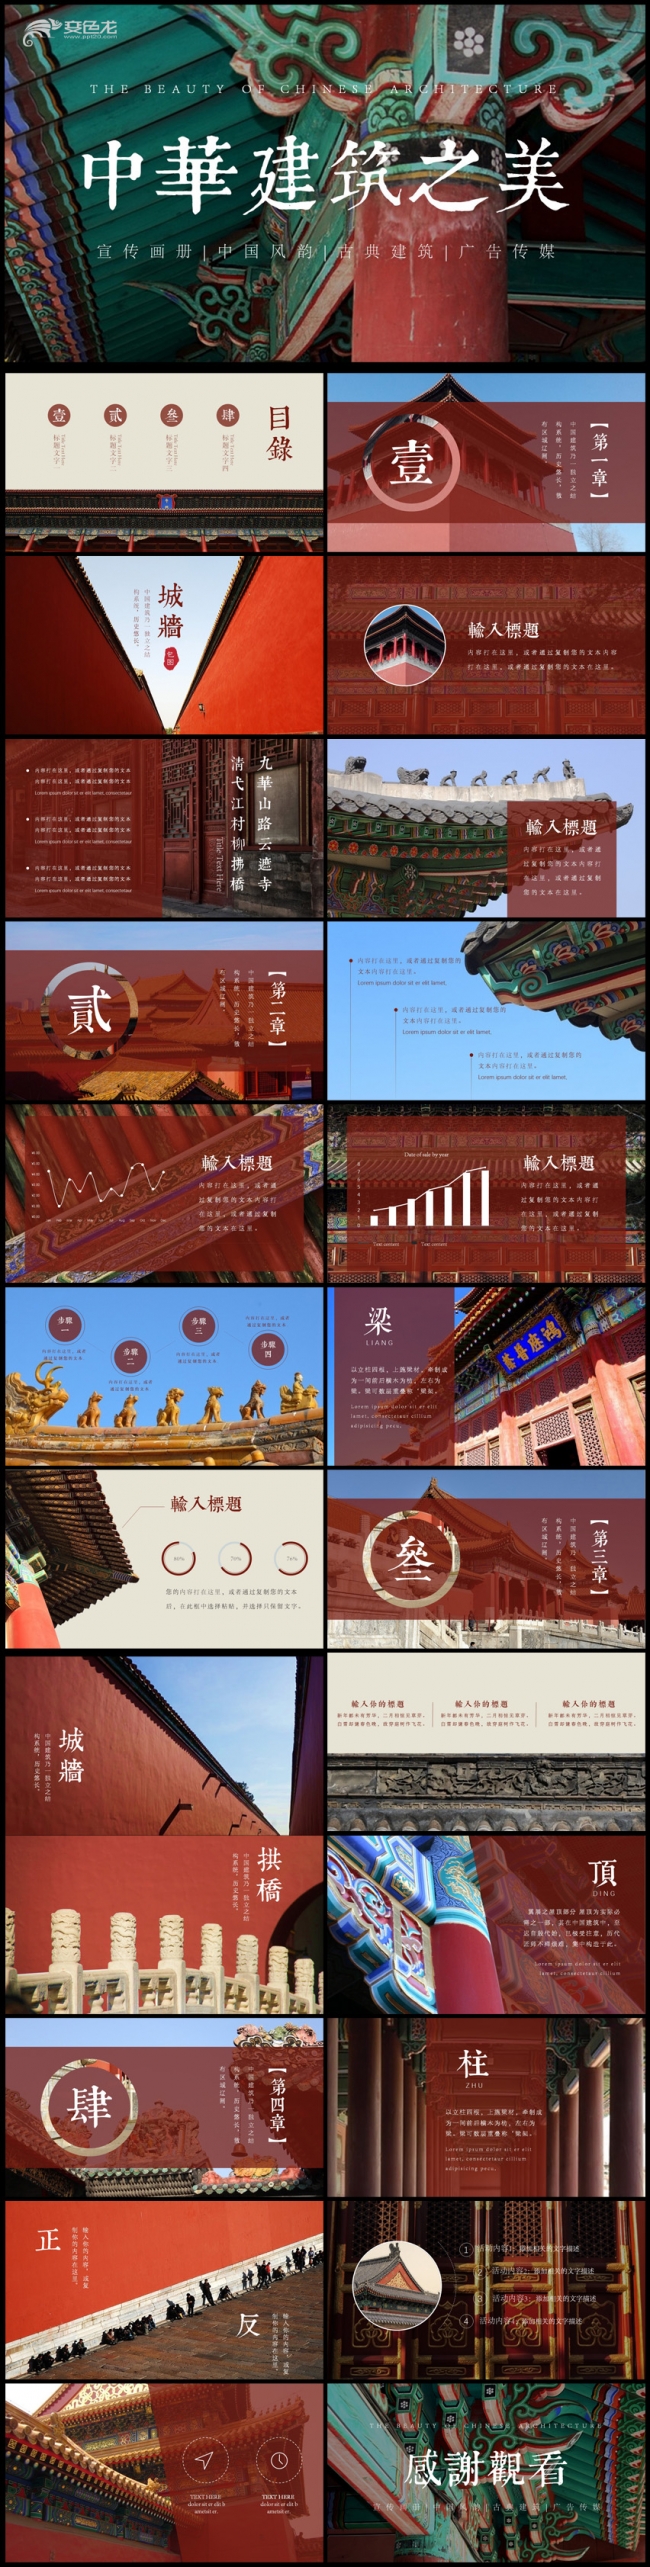 古风古典中国风古典建筑传统文化PPT模板